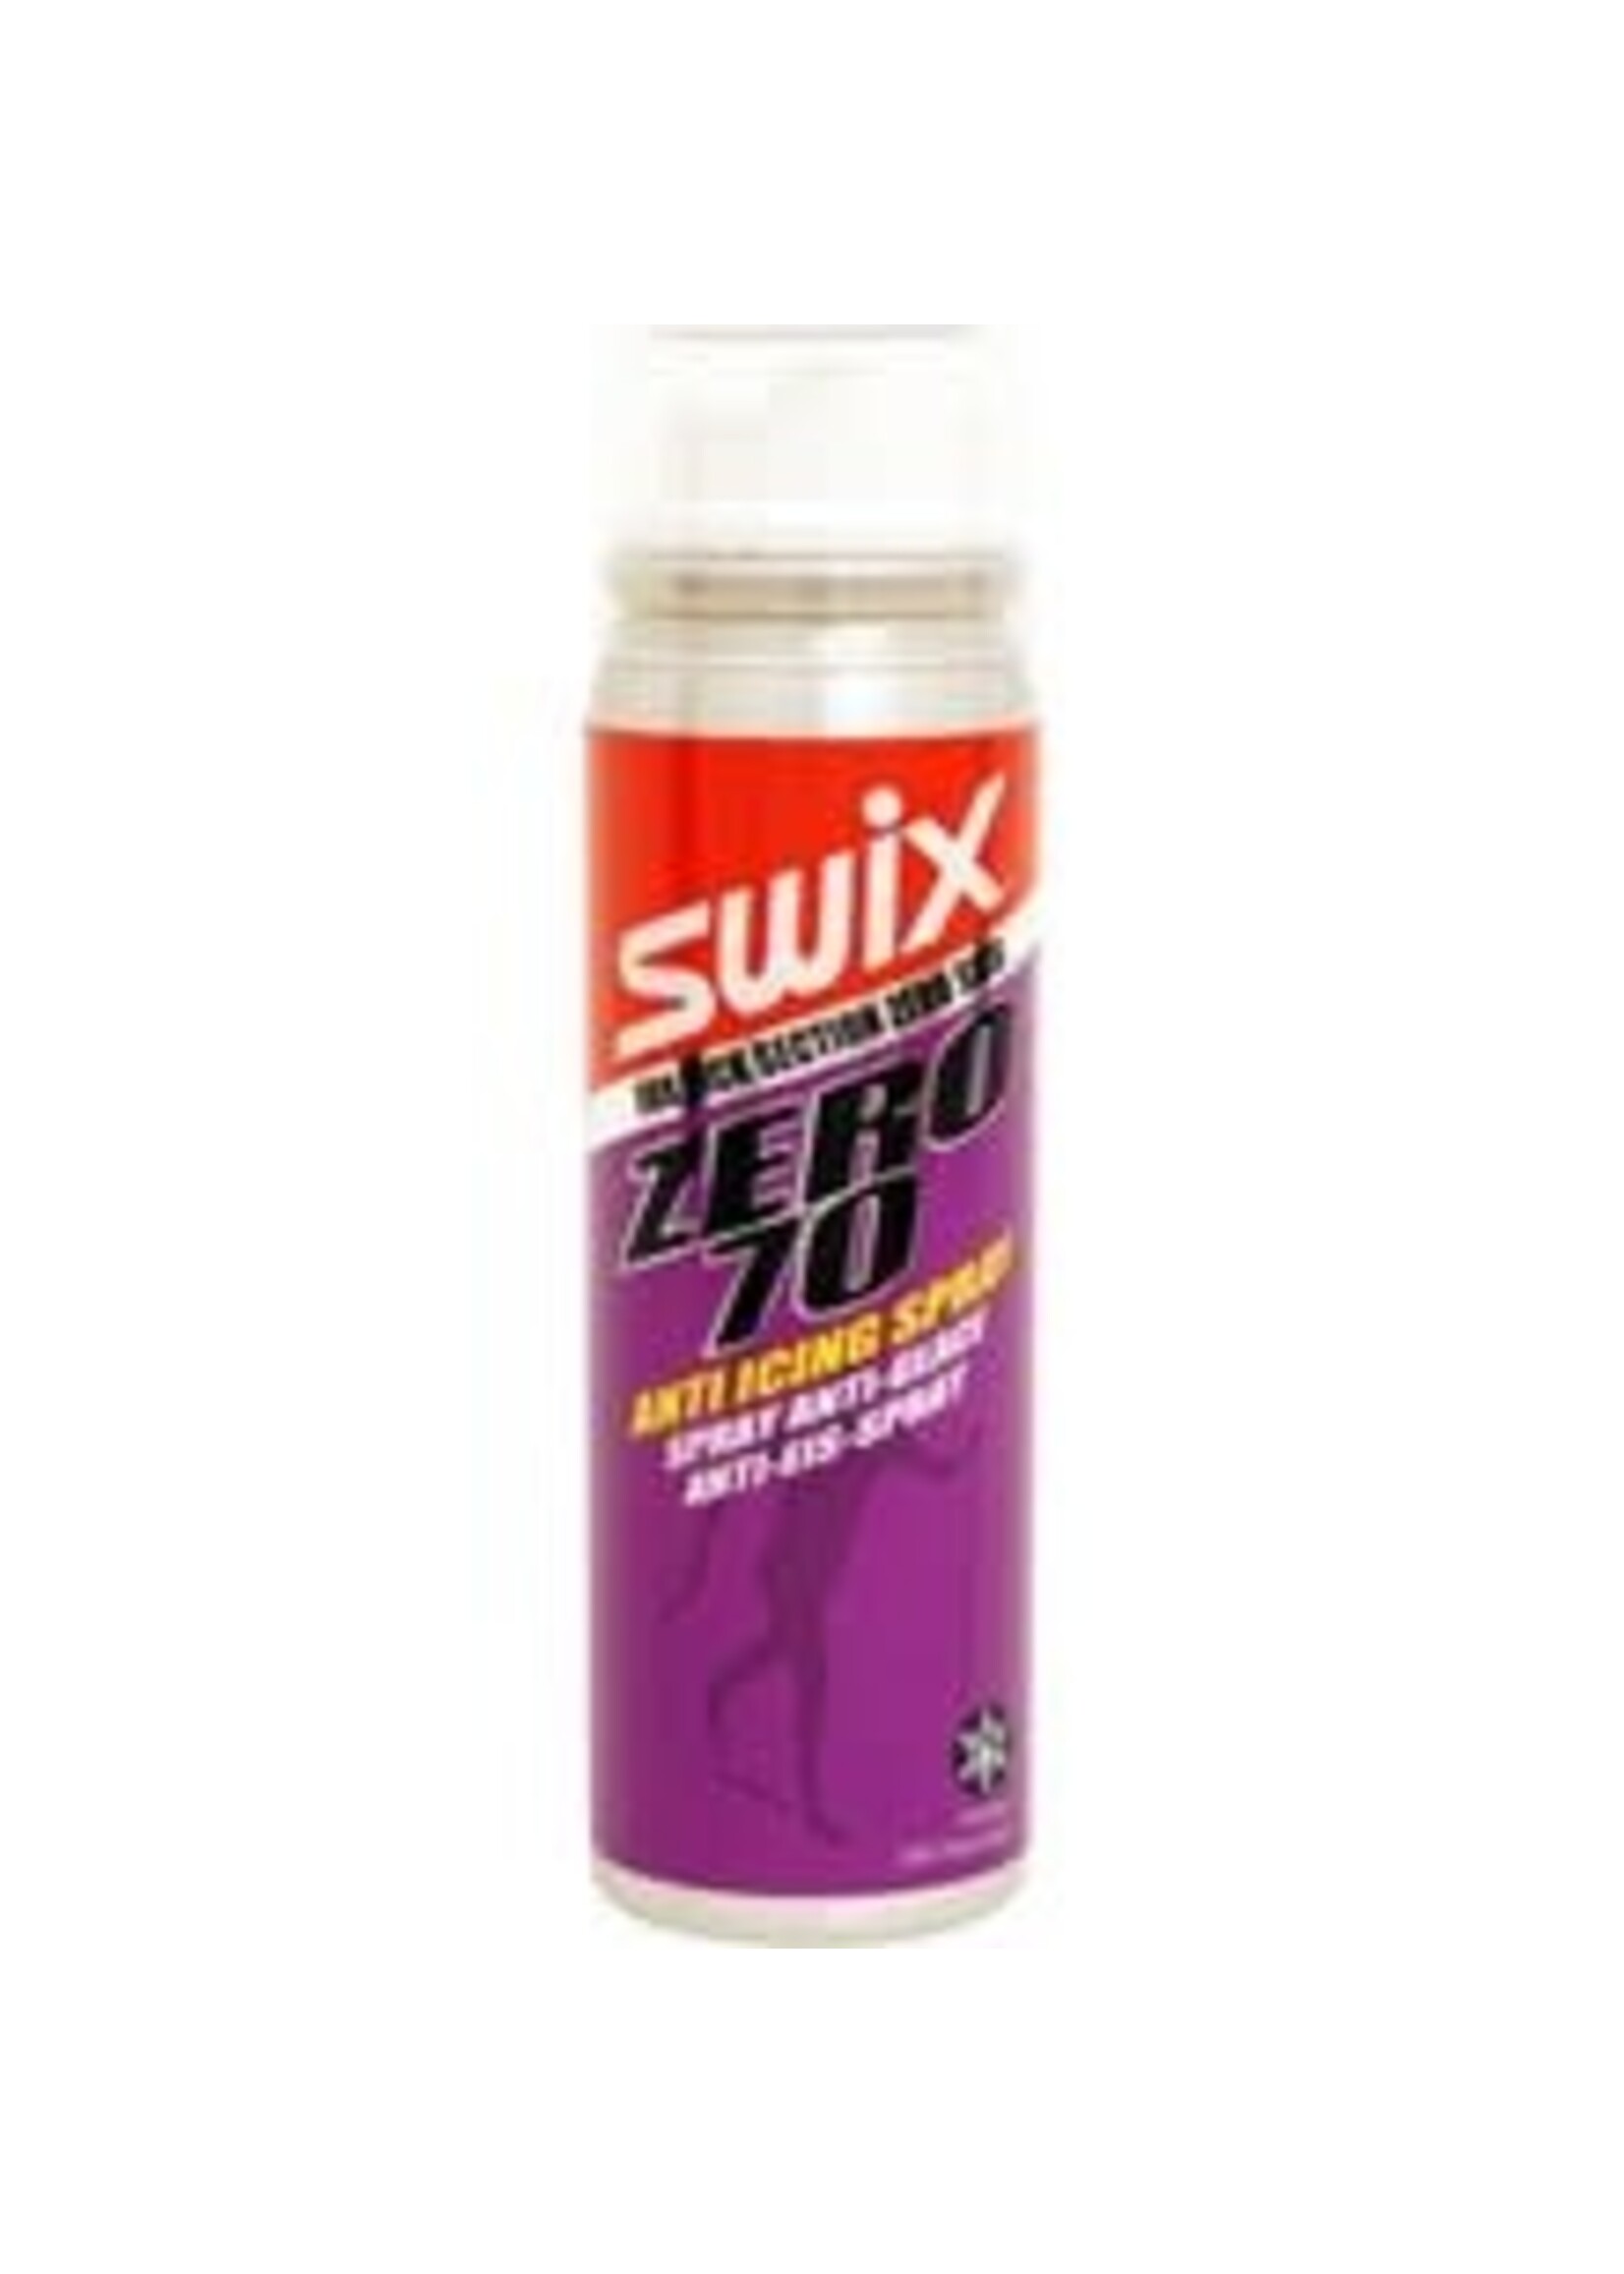 Swix Swix Zero 70 Anti Icing Spray  - 70 ml